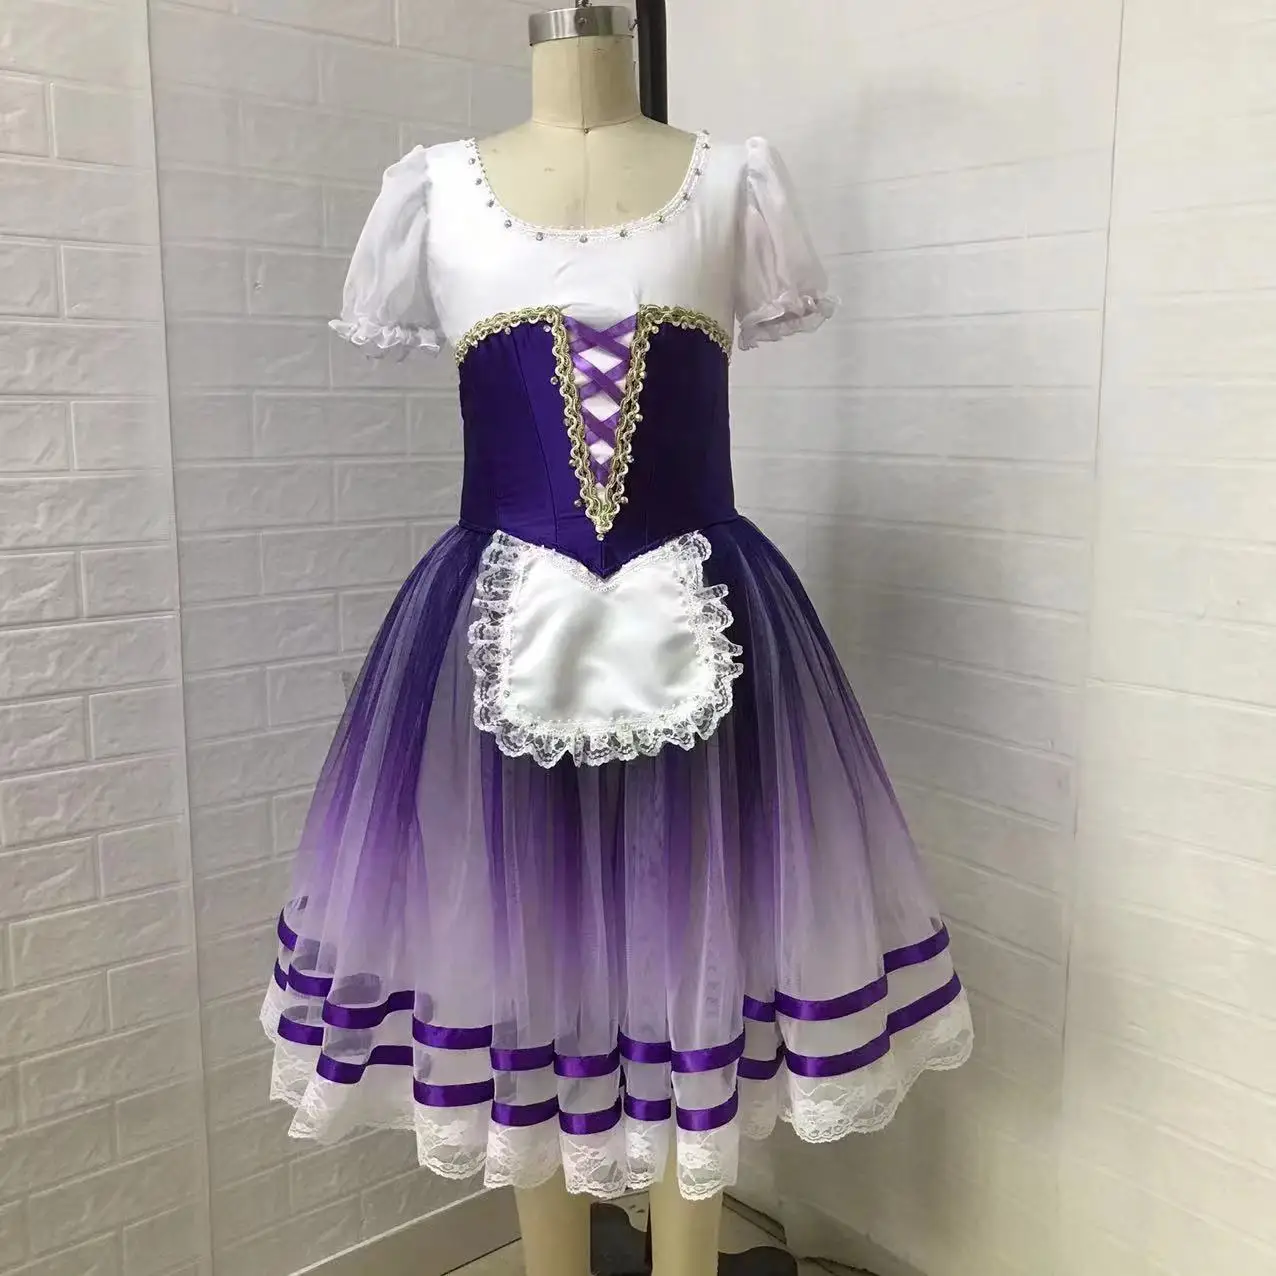 

Балетная юбка танцевальные костюмы для женщин платье фатиновая юбка